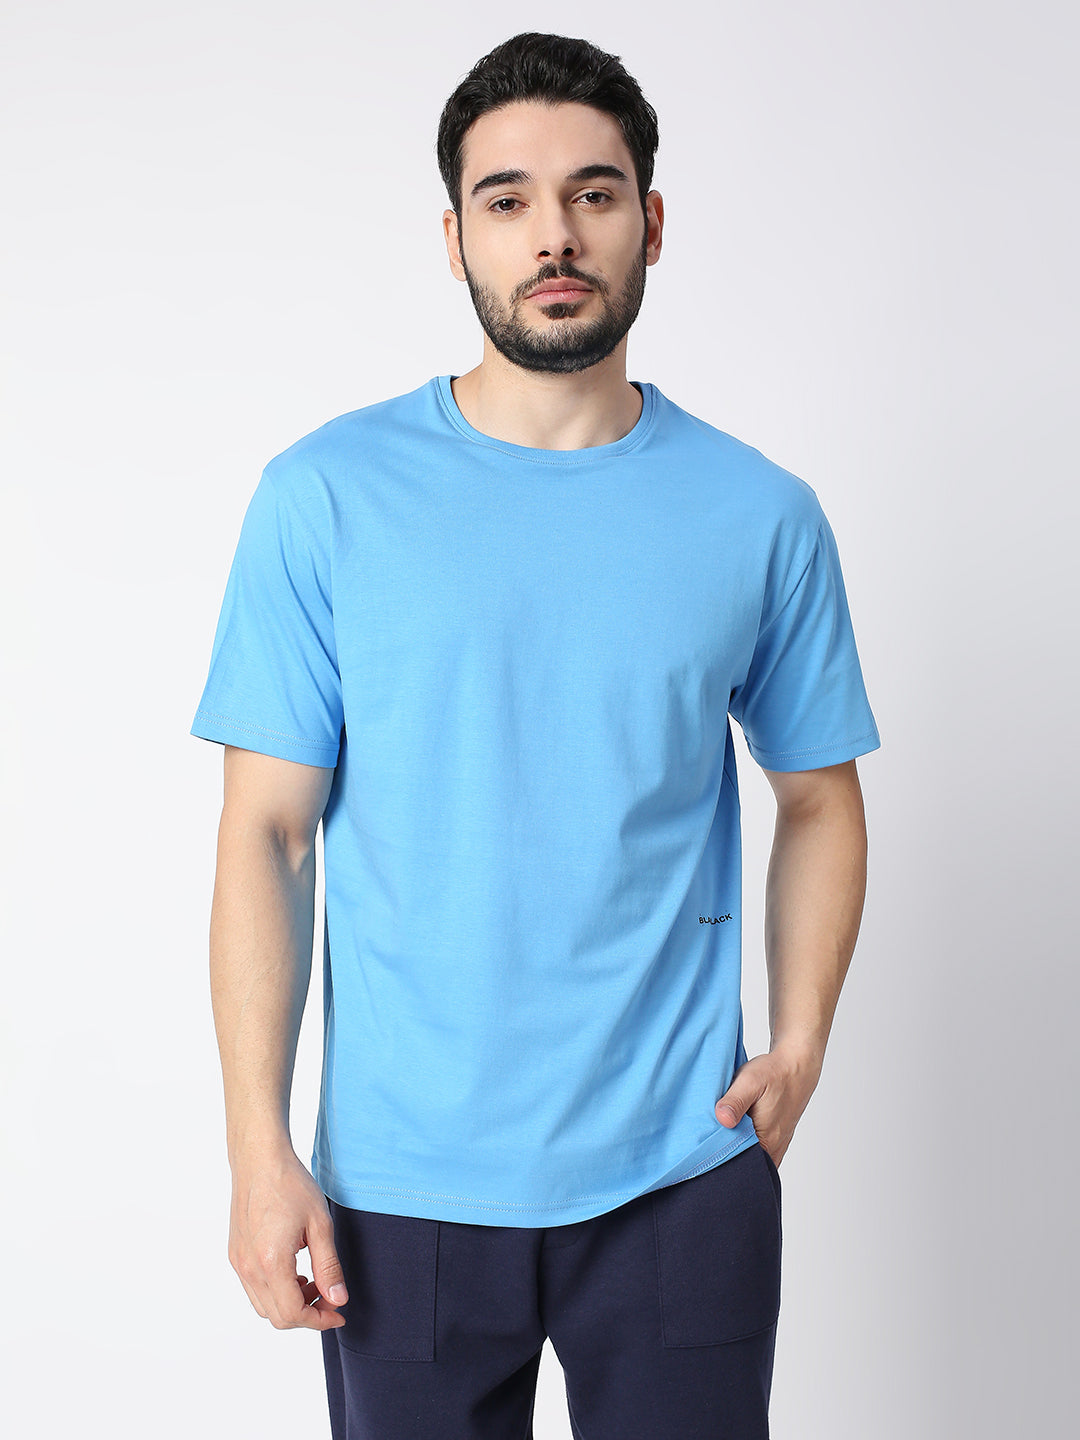 Buy Blamblack Solid Light Blue Half Sleeved T-shirt